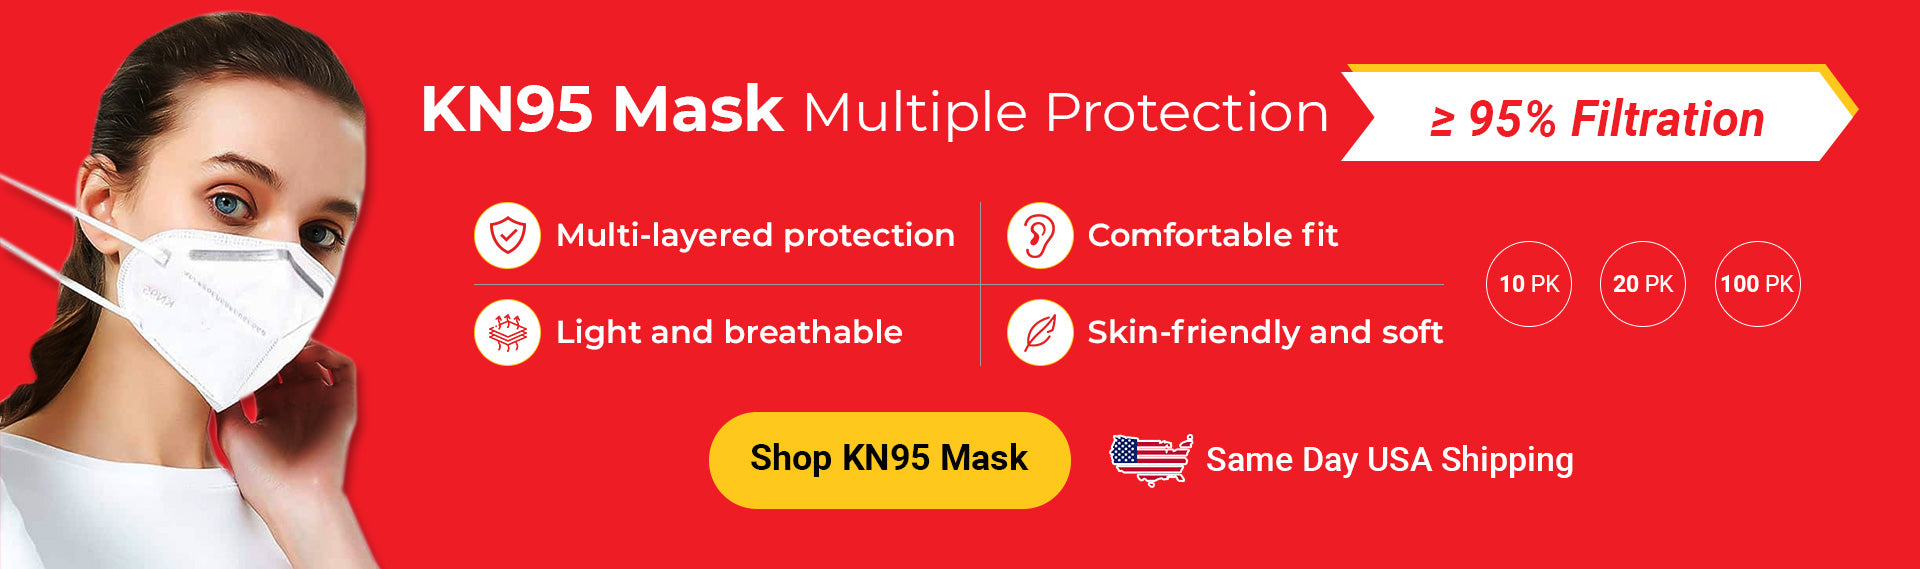 KN95 Masks for Sale at Databazaar.com